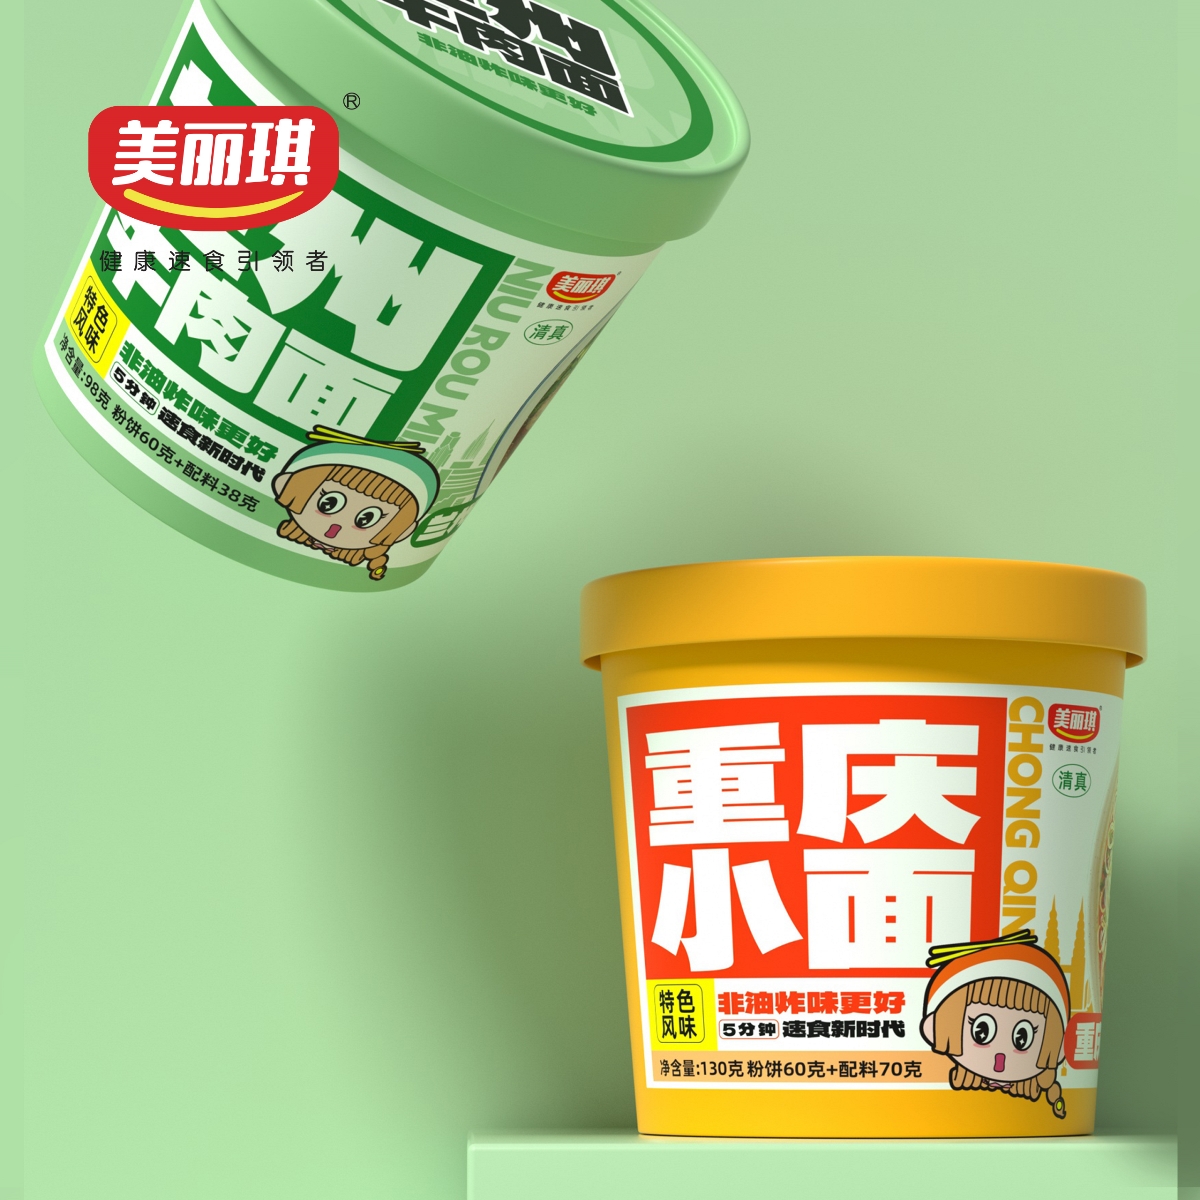 美丽琪速食粉面系列产品设计/古舍策划